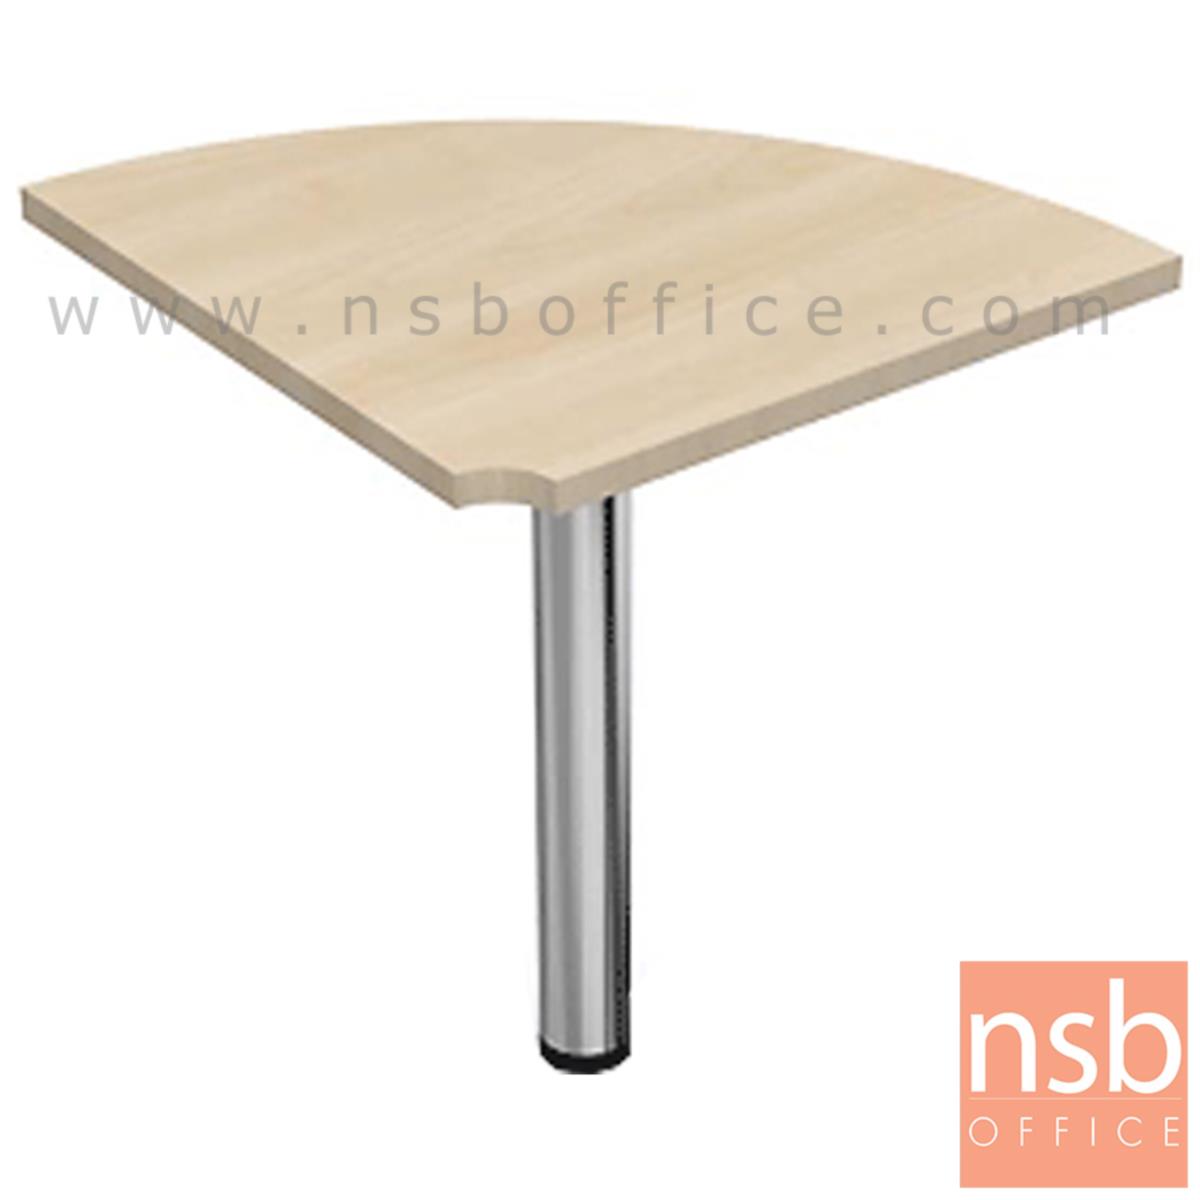 A05A060:โต๊ะเข้ามุมทรงโค้ง  ขนาด R60 cm.   เมลามีน ขากลมโครเมียม